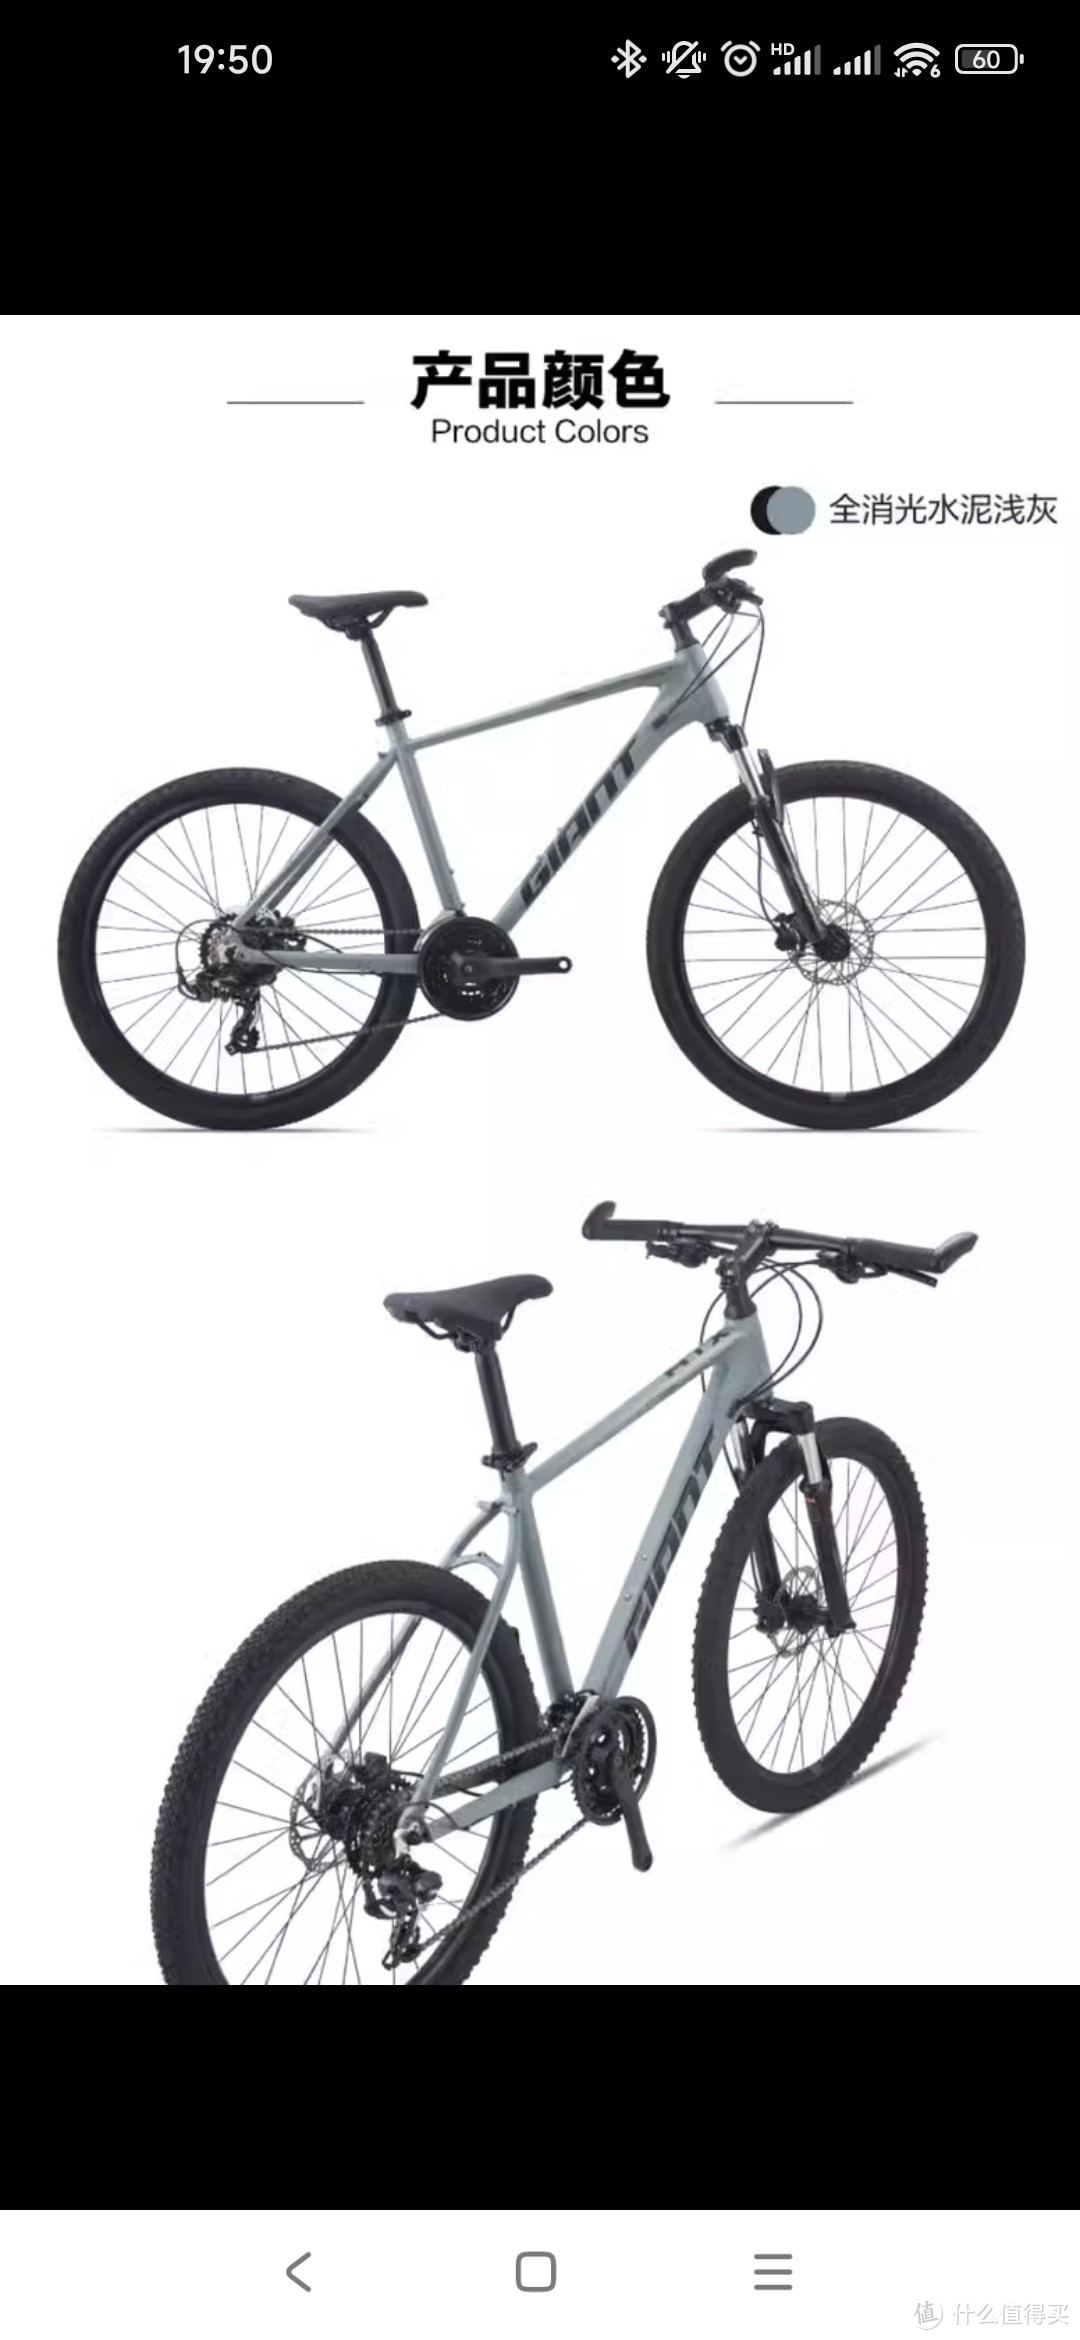 推荐一款入门级的捷安特山地自行车。ATX810！！！